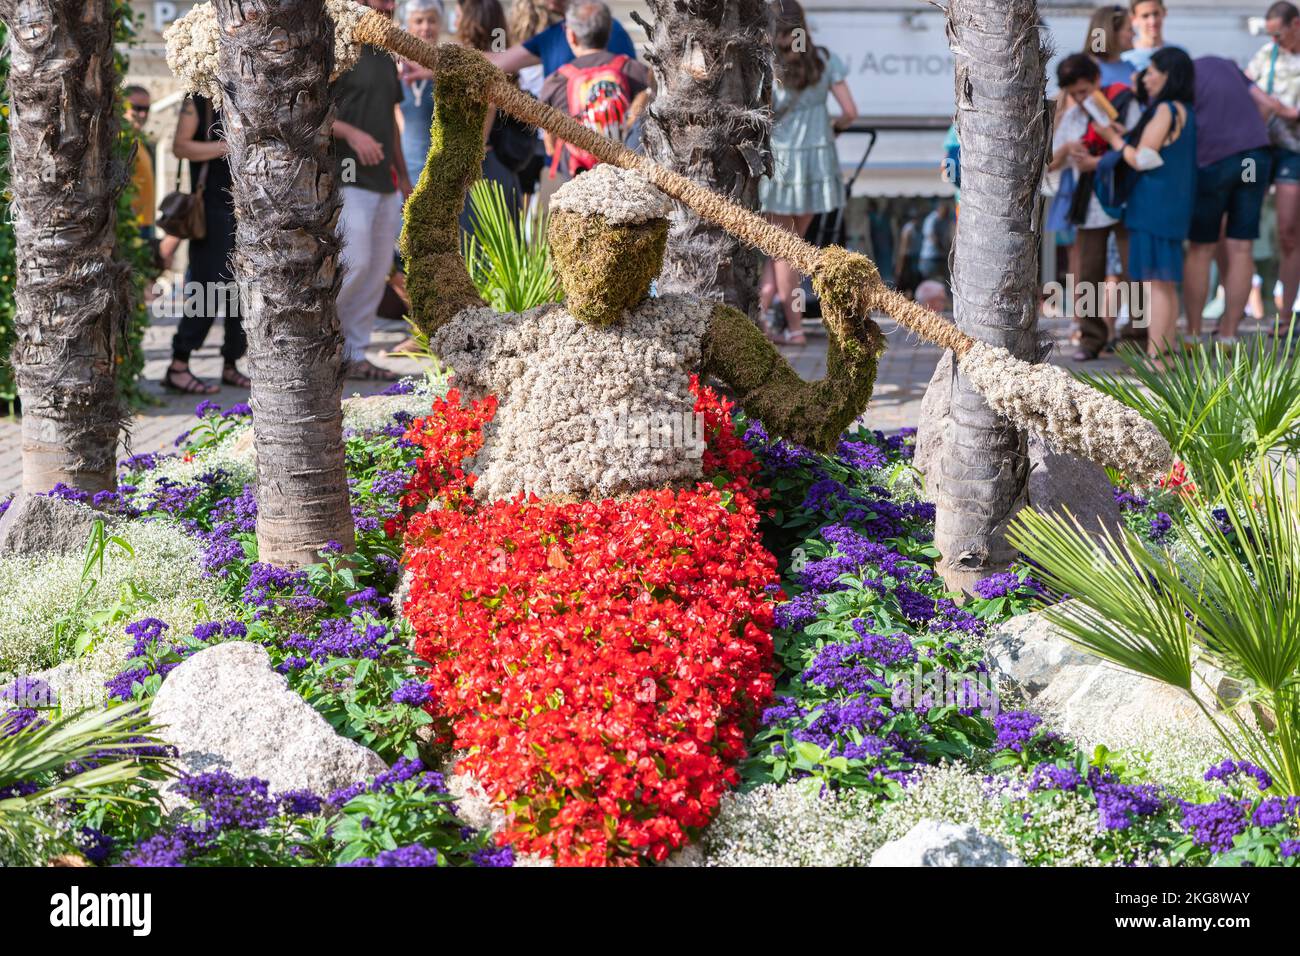 Merano (Meran) ciudad: En los jardines públicos del centro, un arreglo floral con flores de colores brillantes - Tirol del Sur - Trentino Alto Adige, no Foto de stock